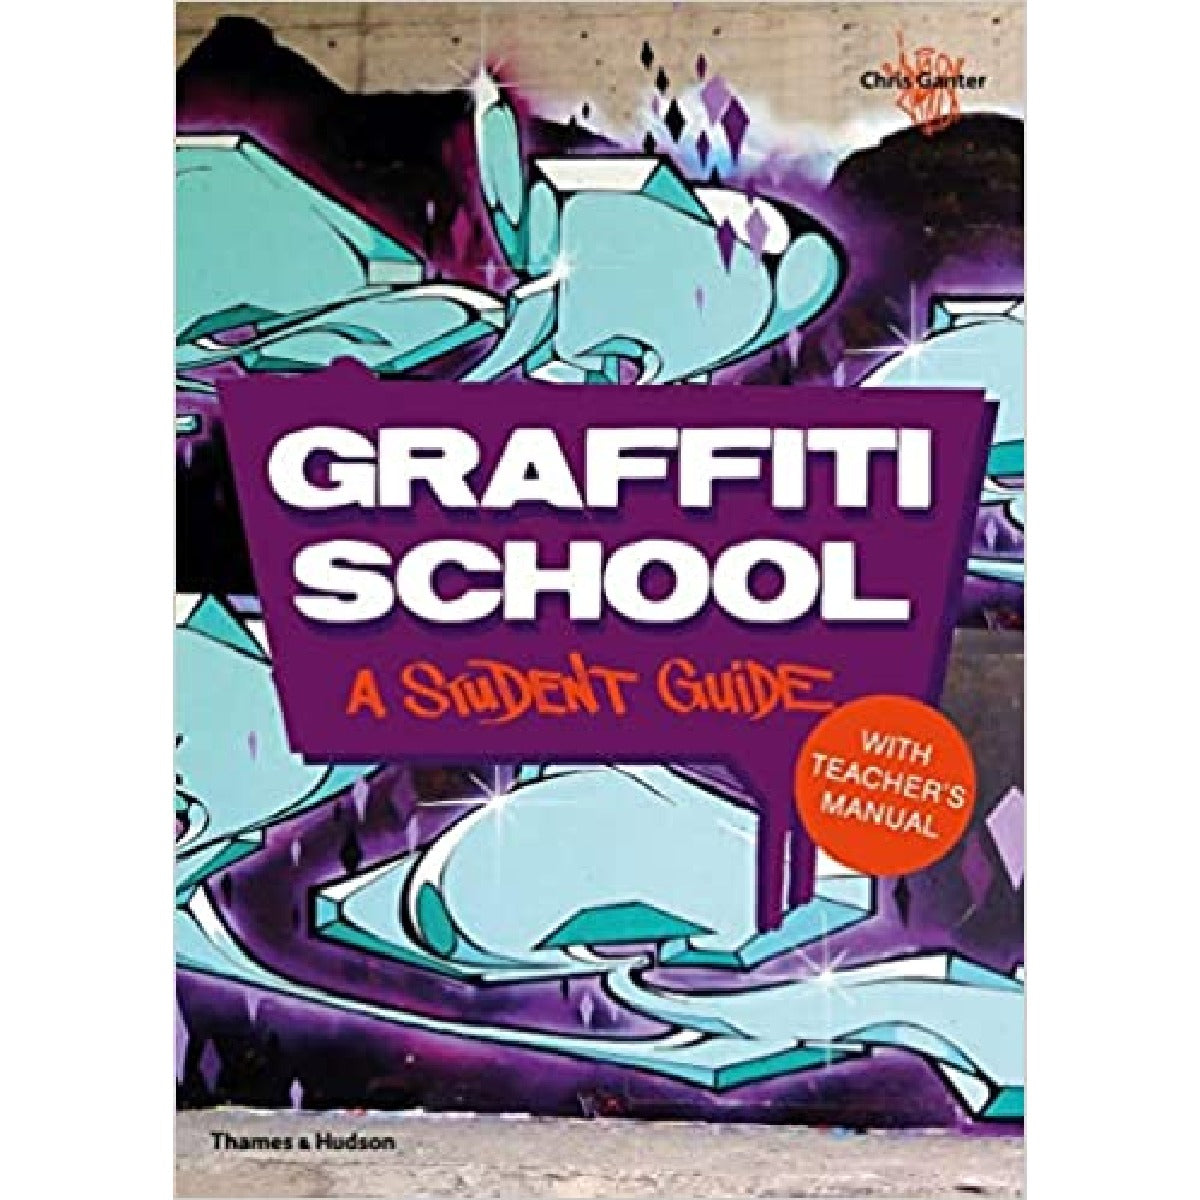 Graffiti School - Graffiti Guide Book for Students